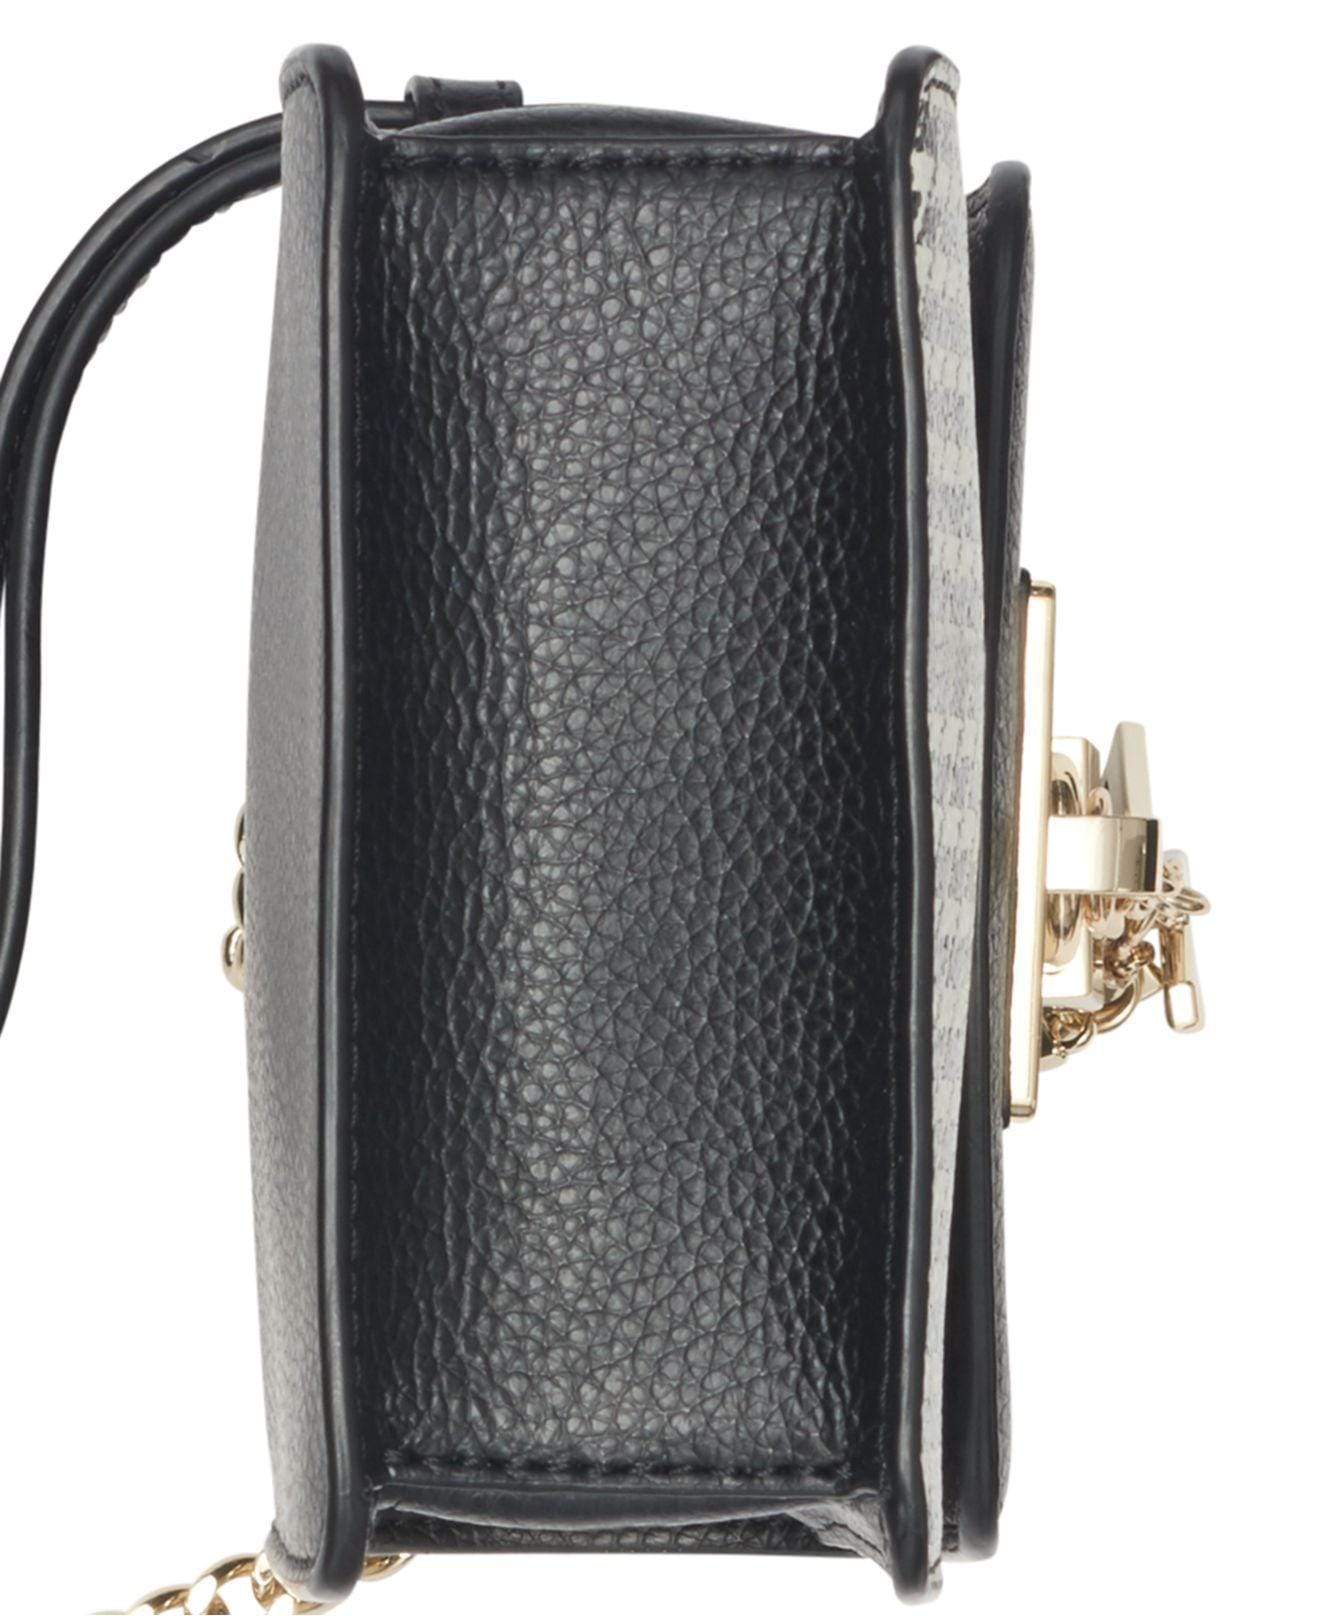 DKNY Handbags Elissa Houndtooth Leather Phone Crossbody